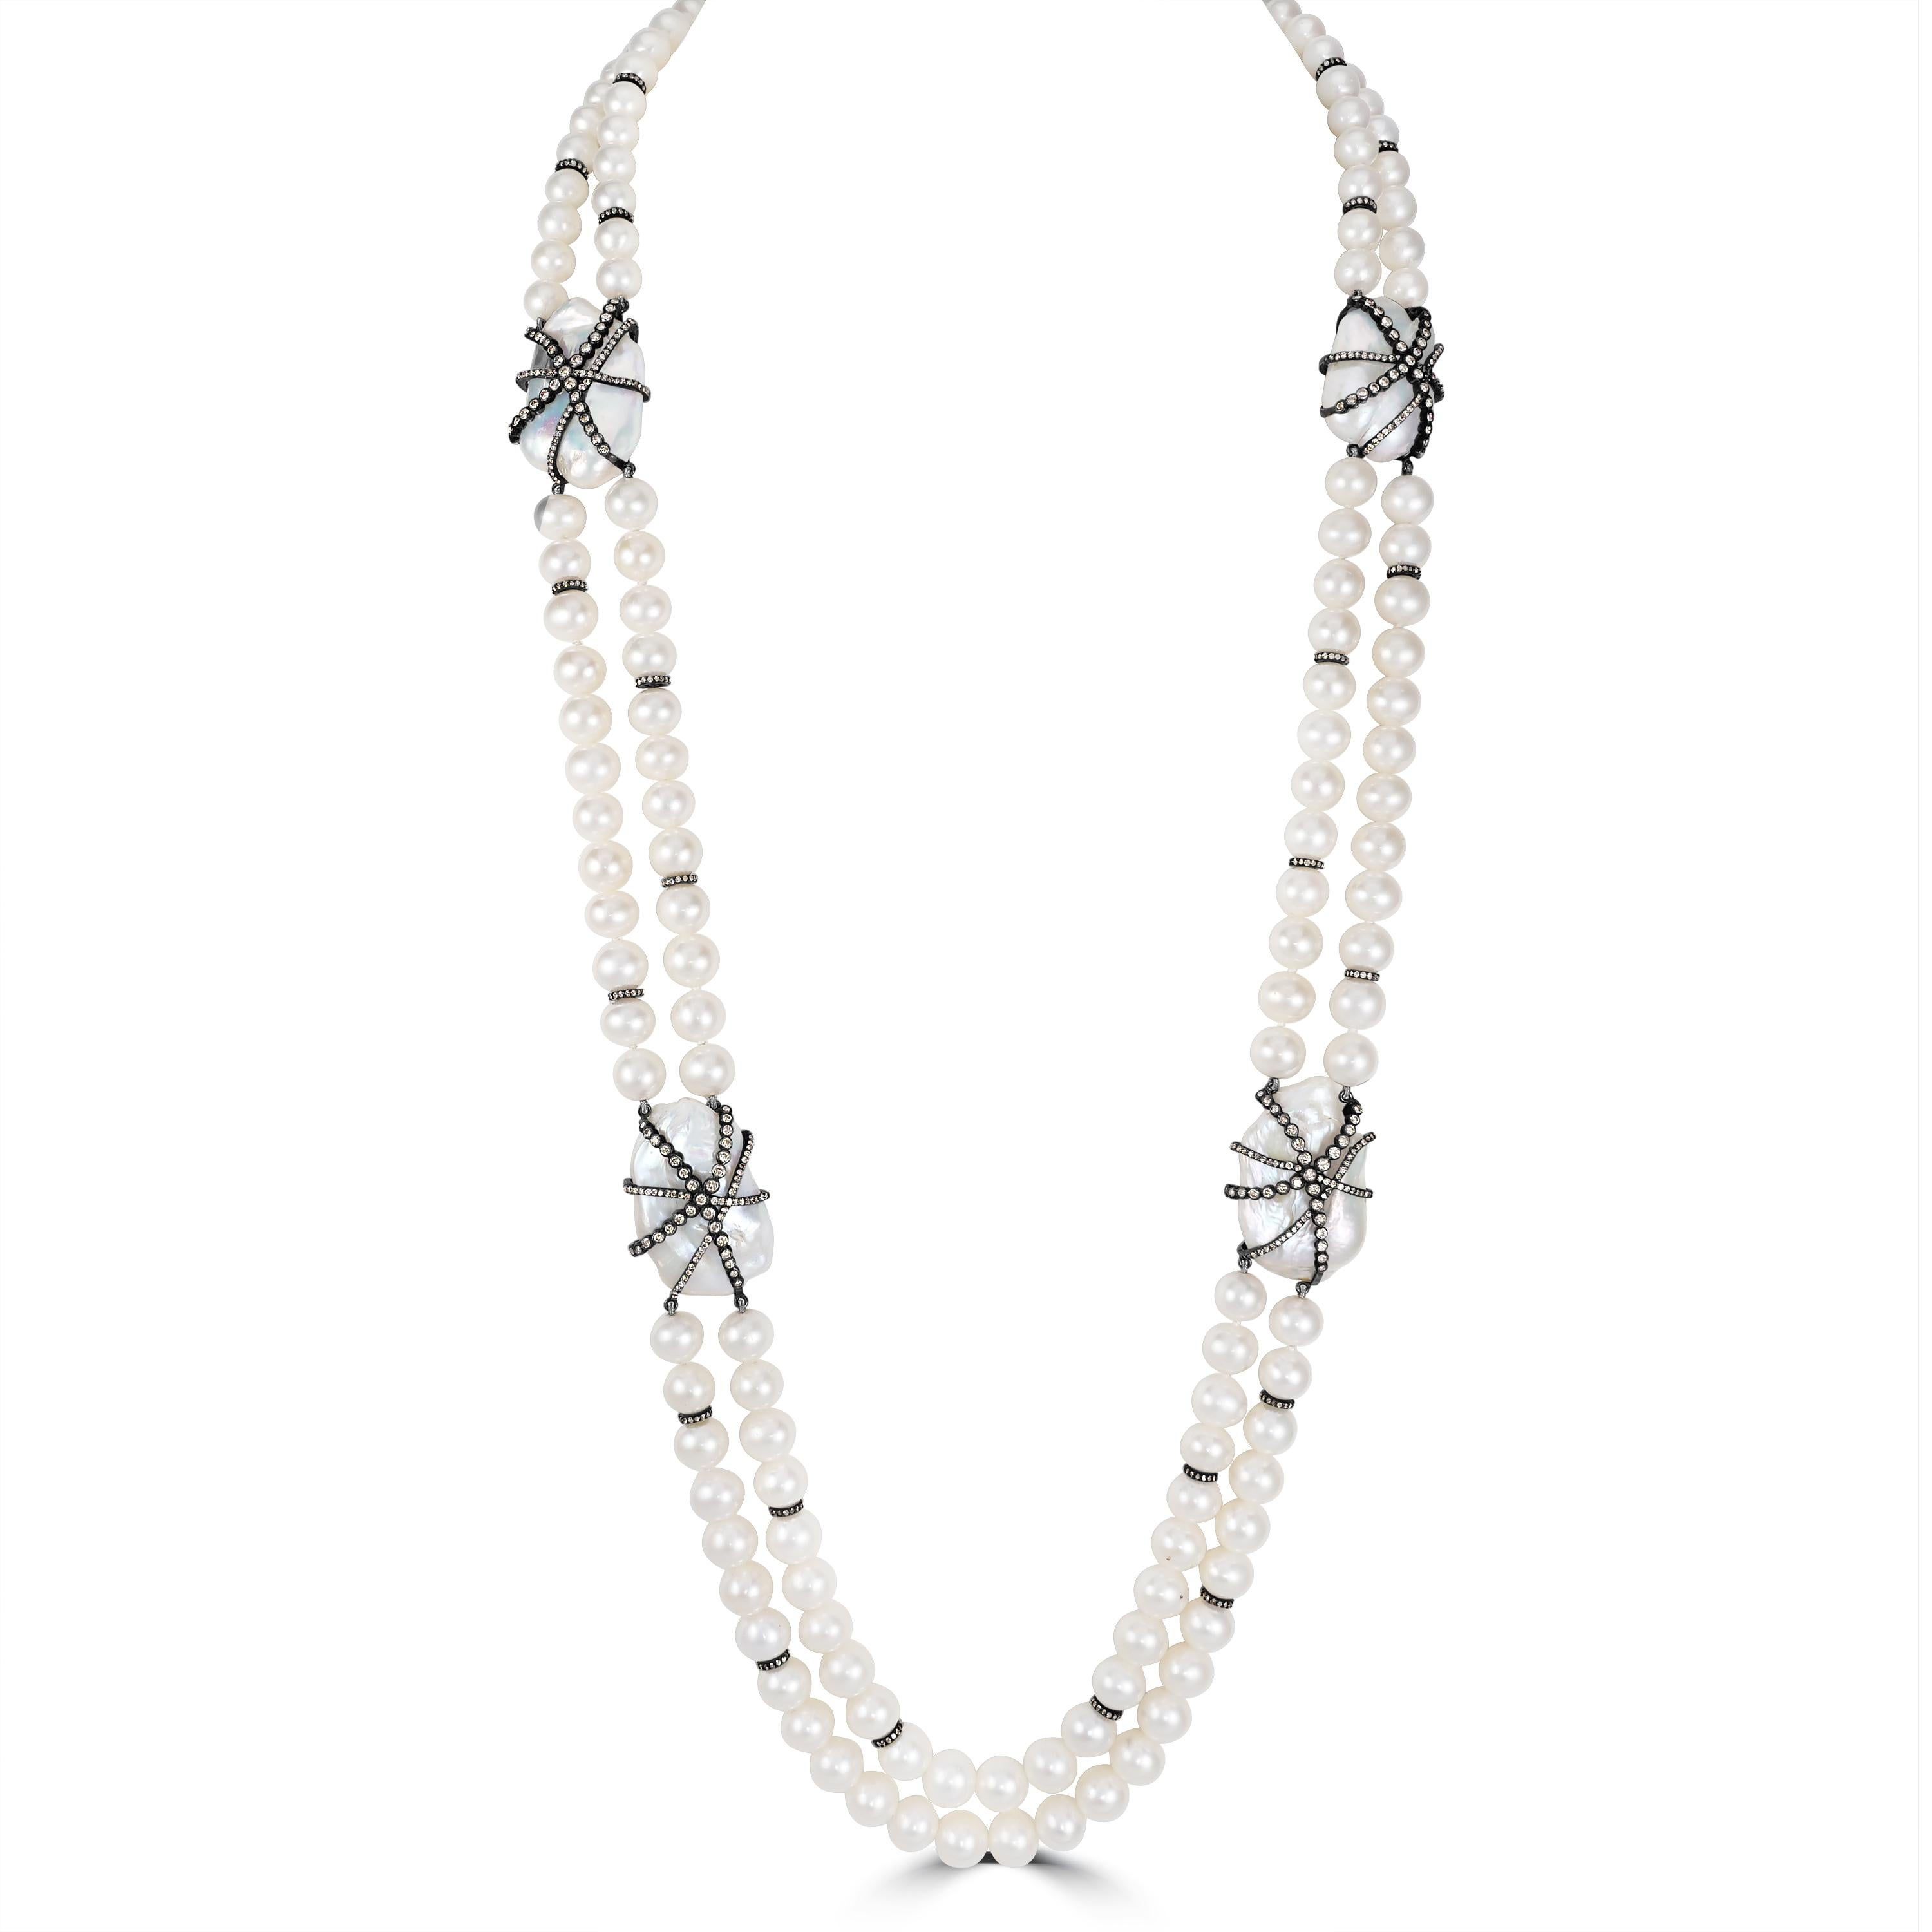 Gönnen Sie sich zeitlose Eleganz mit unserer viktorianischen Perlen- und Diamantperlenkette, einem luxuriösen Schmuckstück, das Raffinesse und Anmut ausstrahlt.

Diese exquisite, mit viel Liebe zum Detail gefertigte Halskette besteht aus einem 15 cm